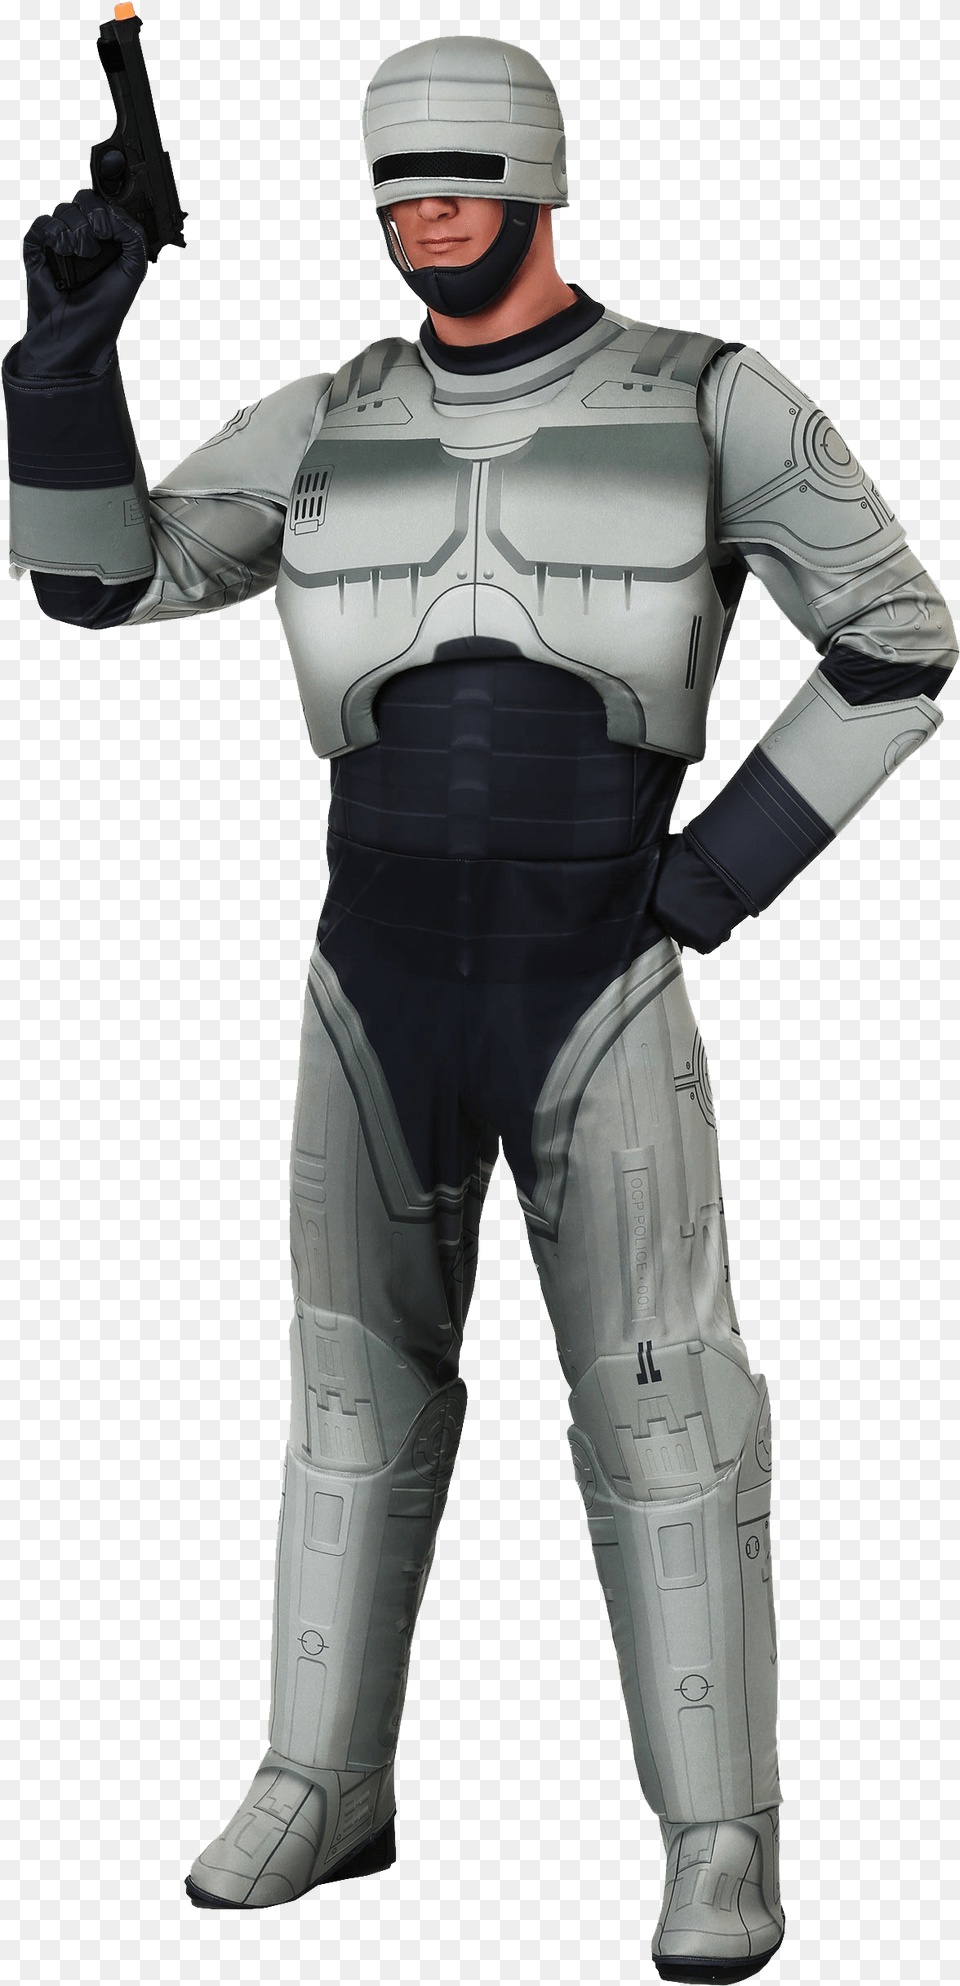 Robocop Image File Robocop Suit, Armor, Adult, Male, Man Free Transparent Png